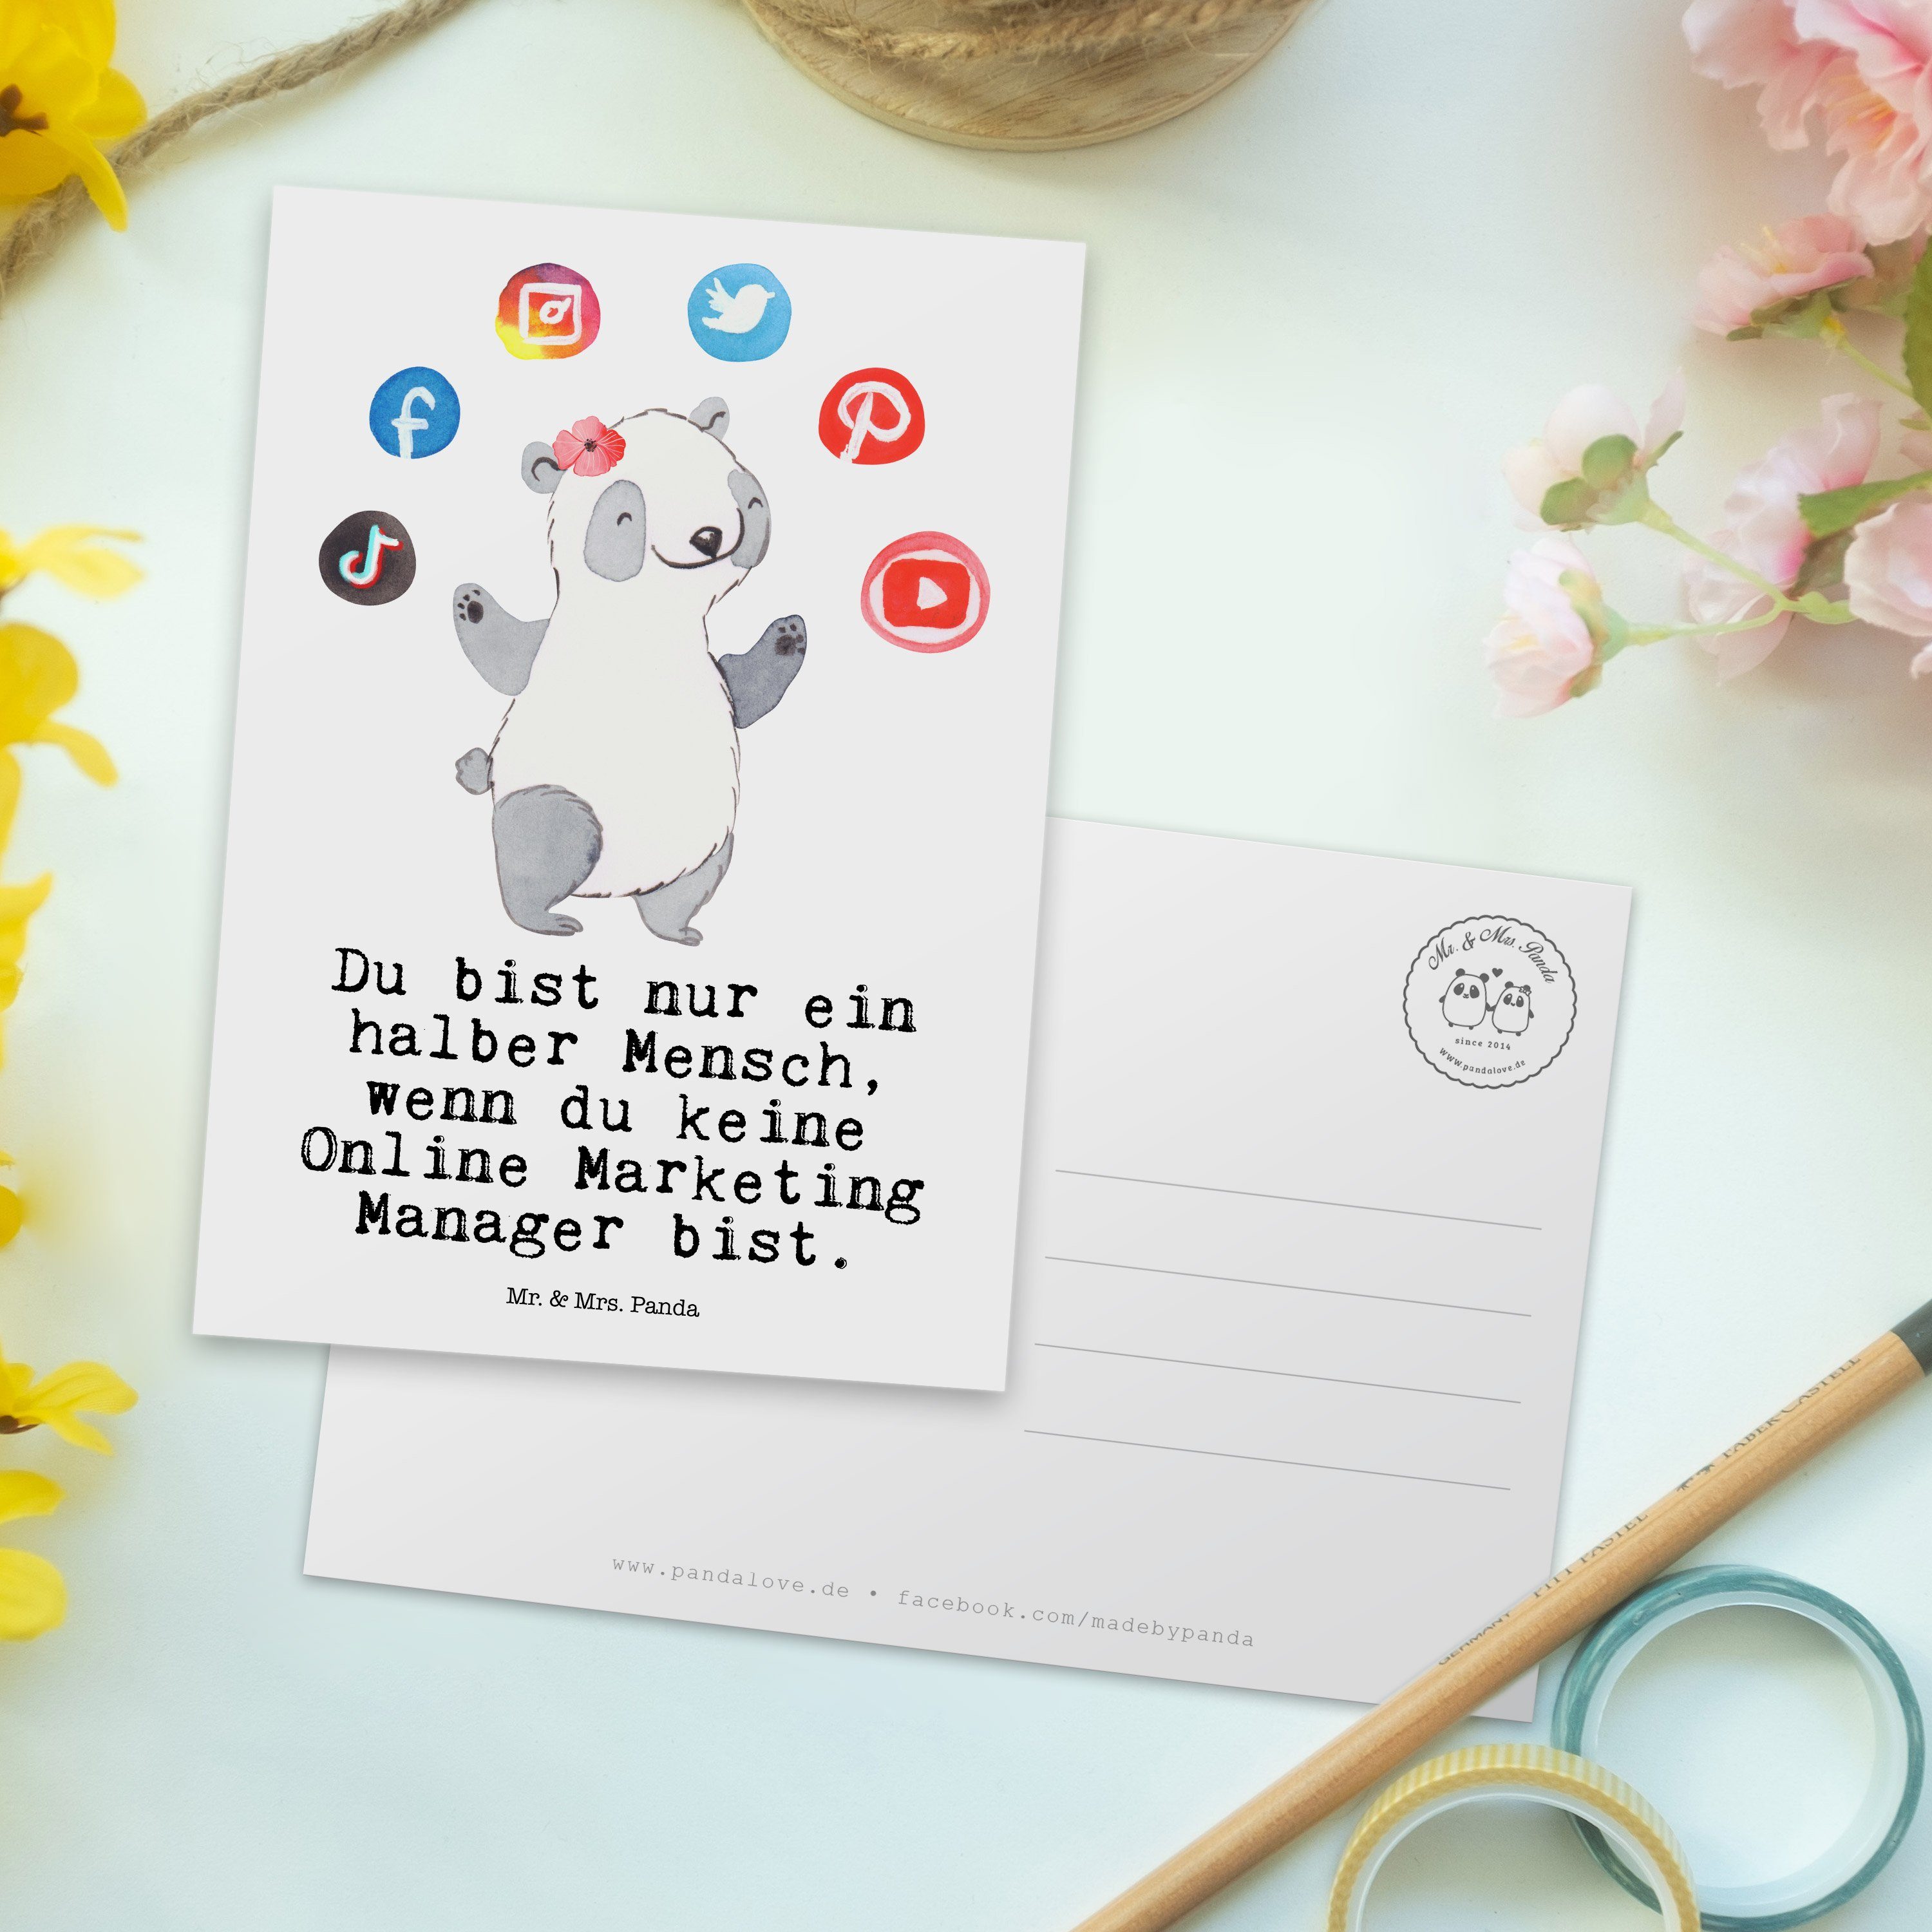 Weiß Mrs. Herz Kollege, Digital Geschenk, Panda Marketing mit - - & Mr. Manager Online Postkarte